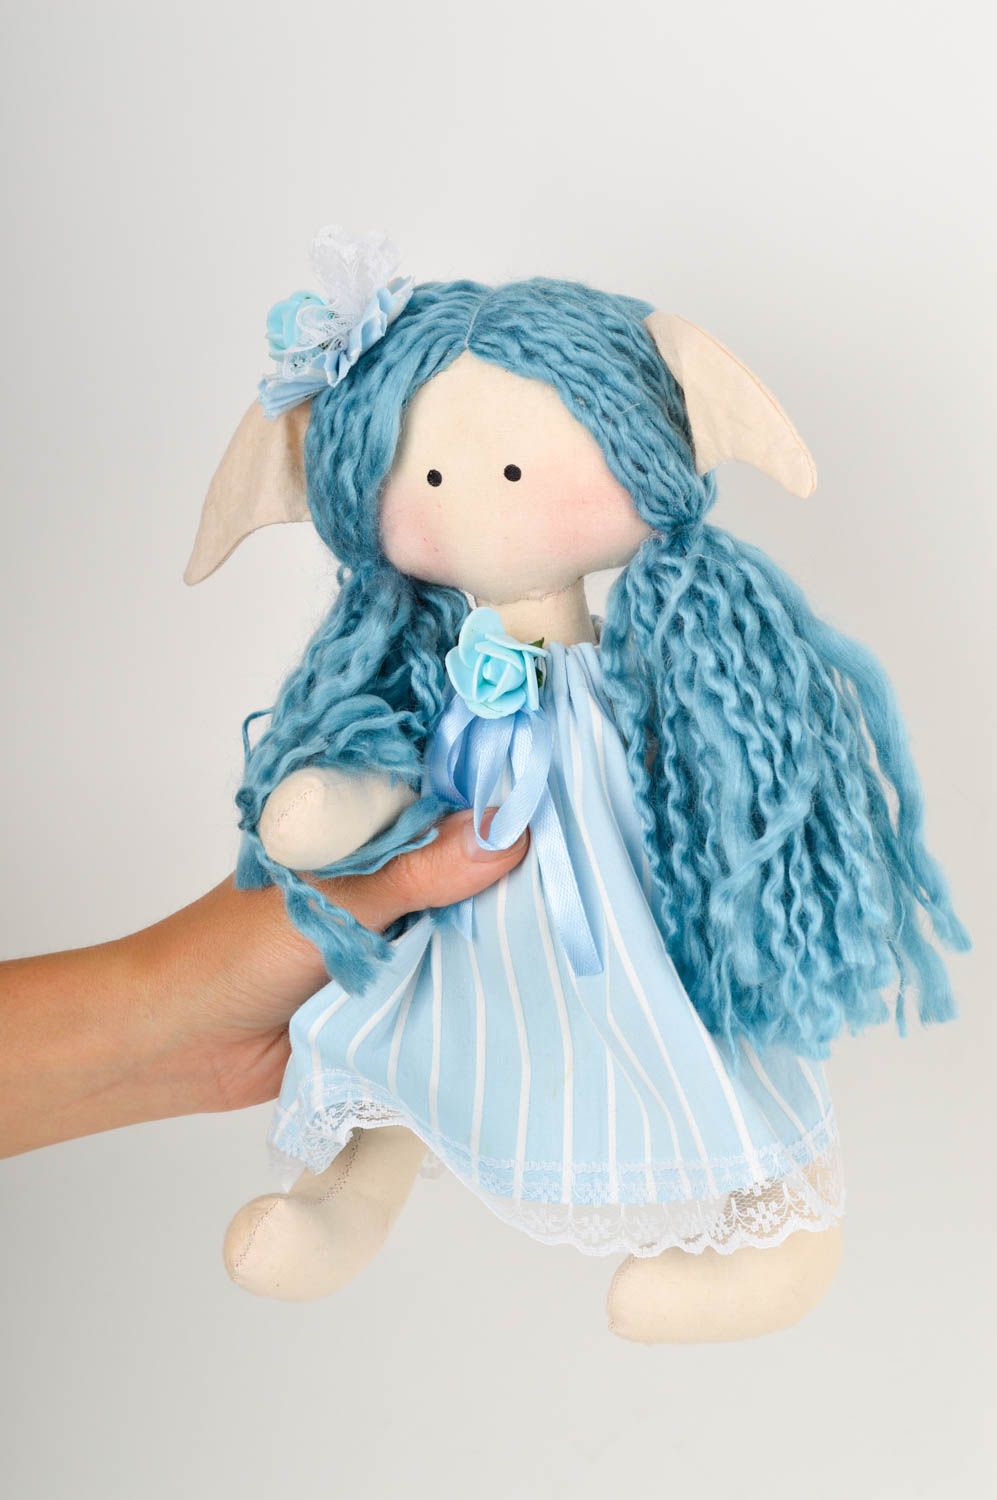 Кукла ручной работы кукла из ткани голубая мягкая кукла авторского дизайна фото 2